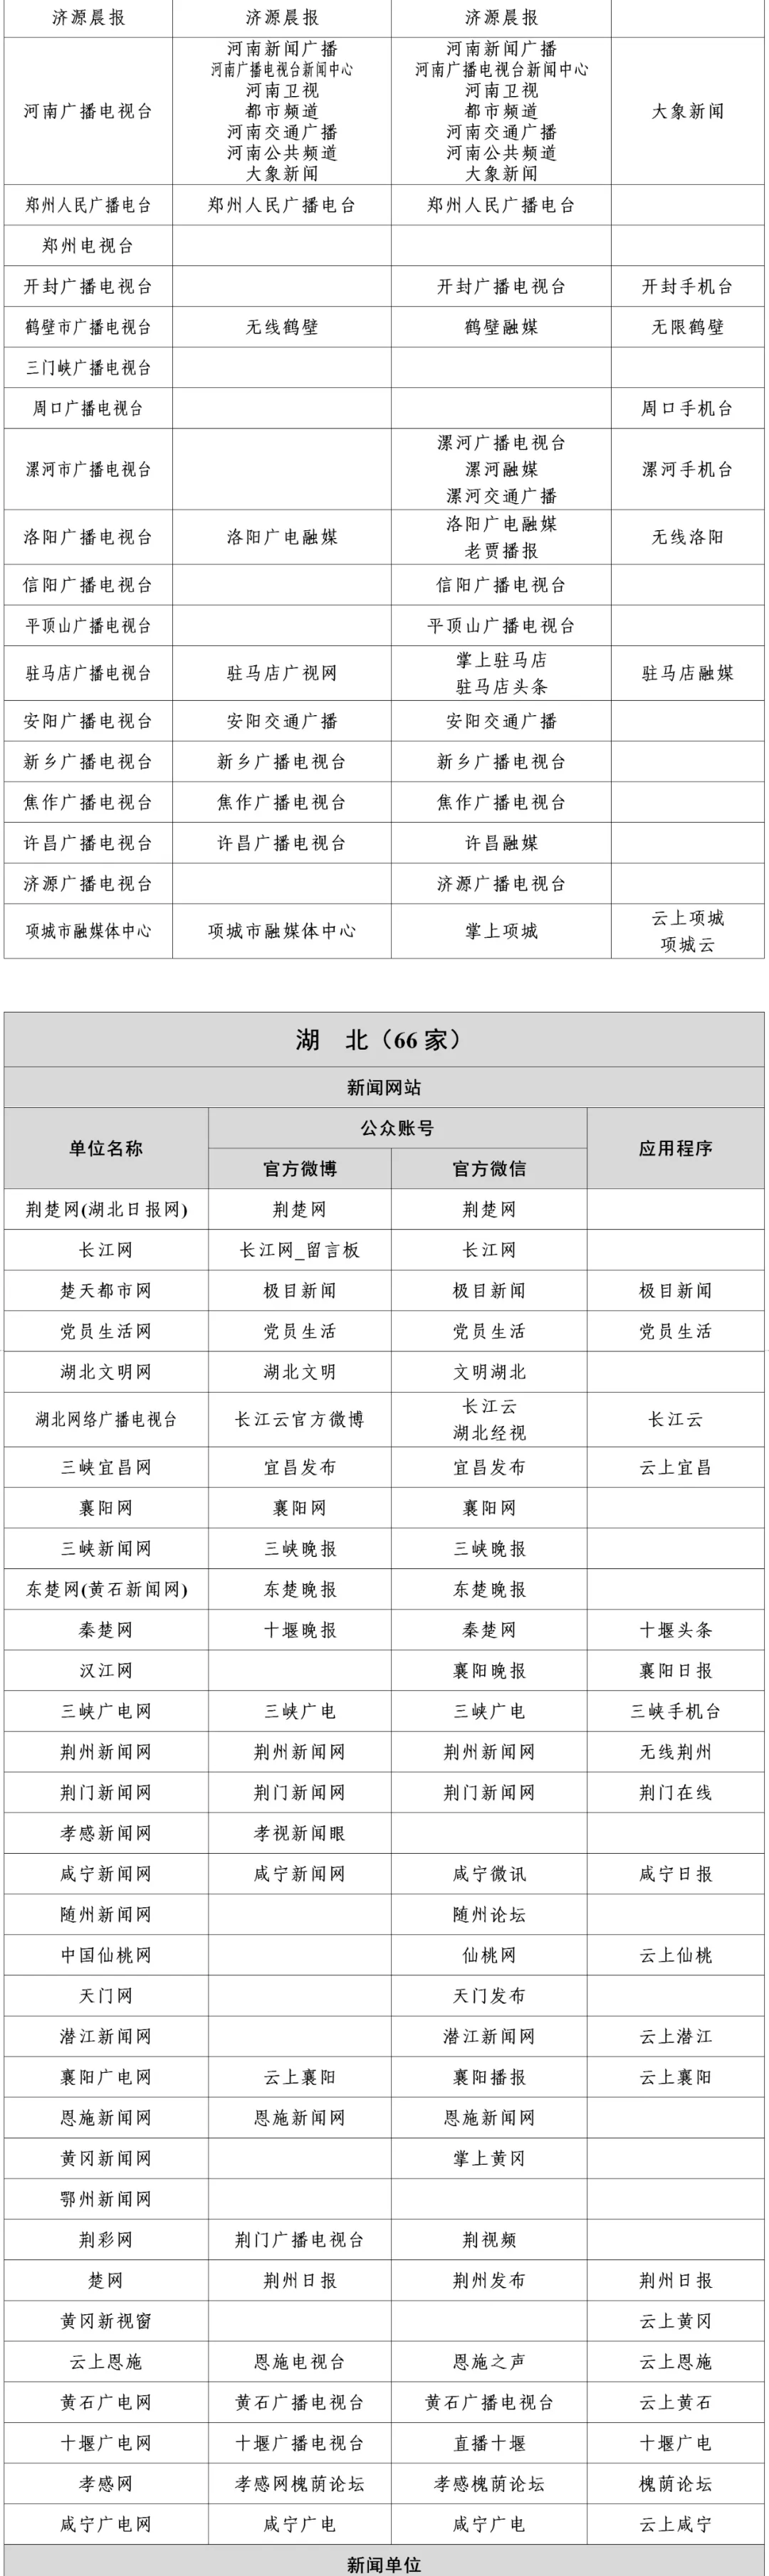 河北新闻信息稿源单位名单